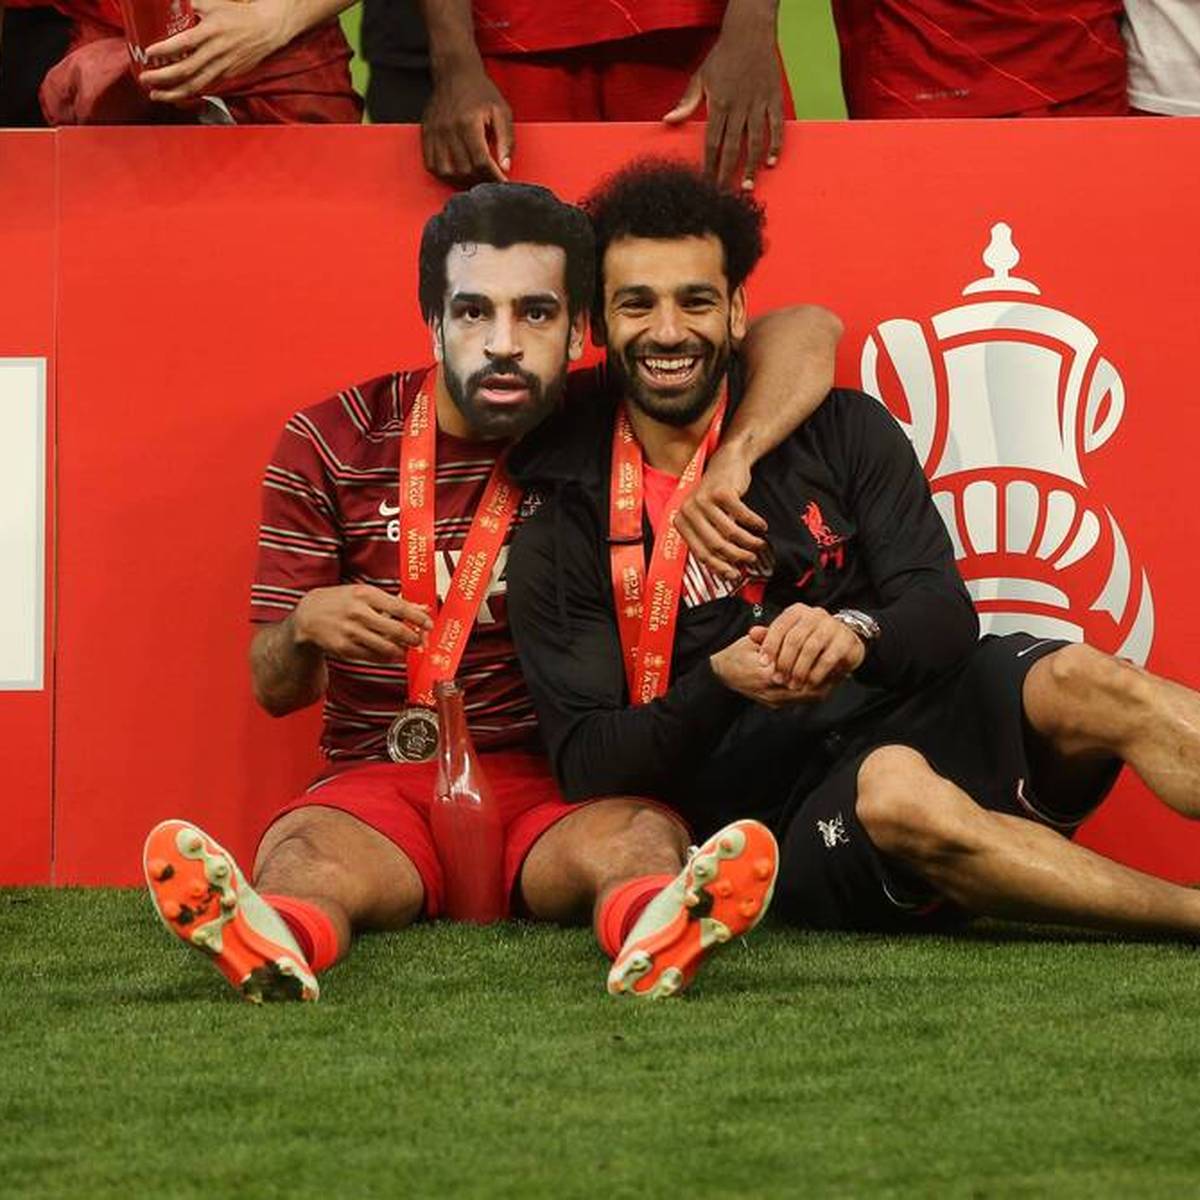 Der FC Liverpool schlägt den FC Chelsea im FA-Cup-Finale. Mohamed Salah feiert den Erfolg gebührend und sorgt mit einer besonderen Geste für Aufsehen.